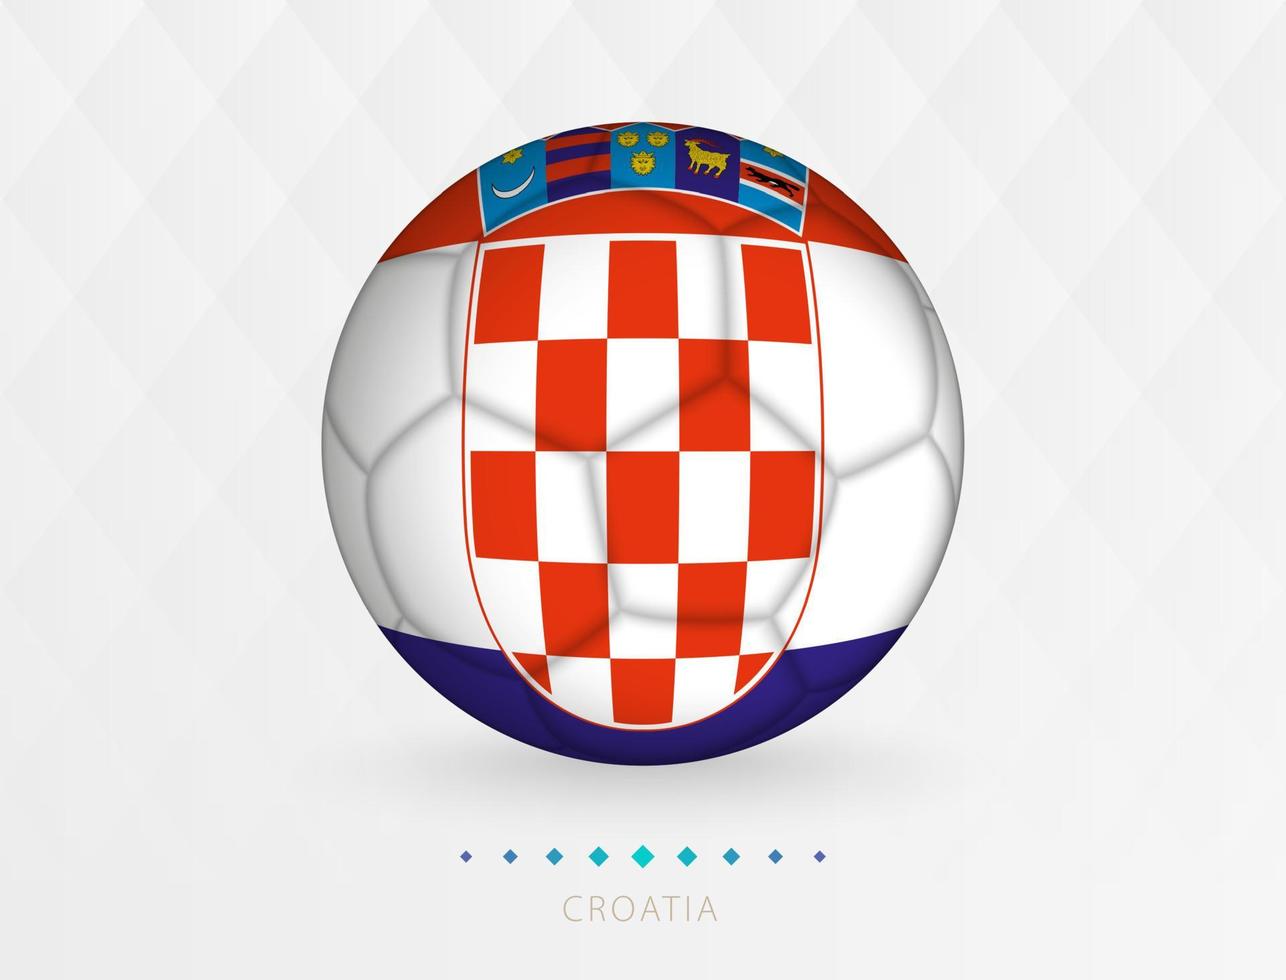 Amerikaans voetbal bal met Kroatië vlag patroon, voetbal bal met vlag van Kroatië nationaal team. vector